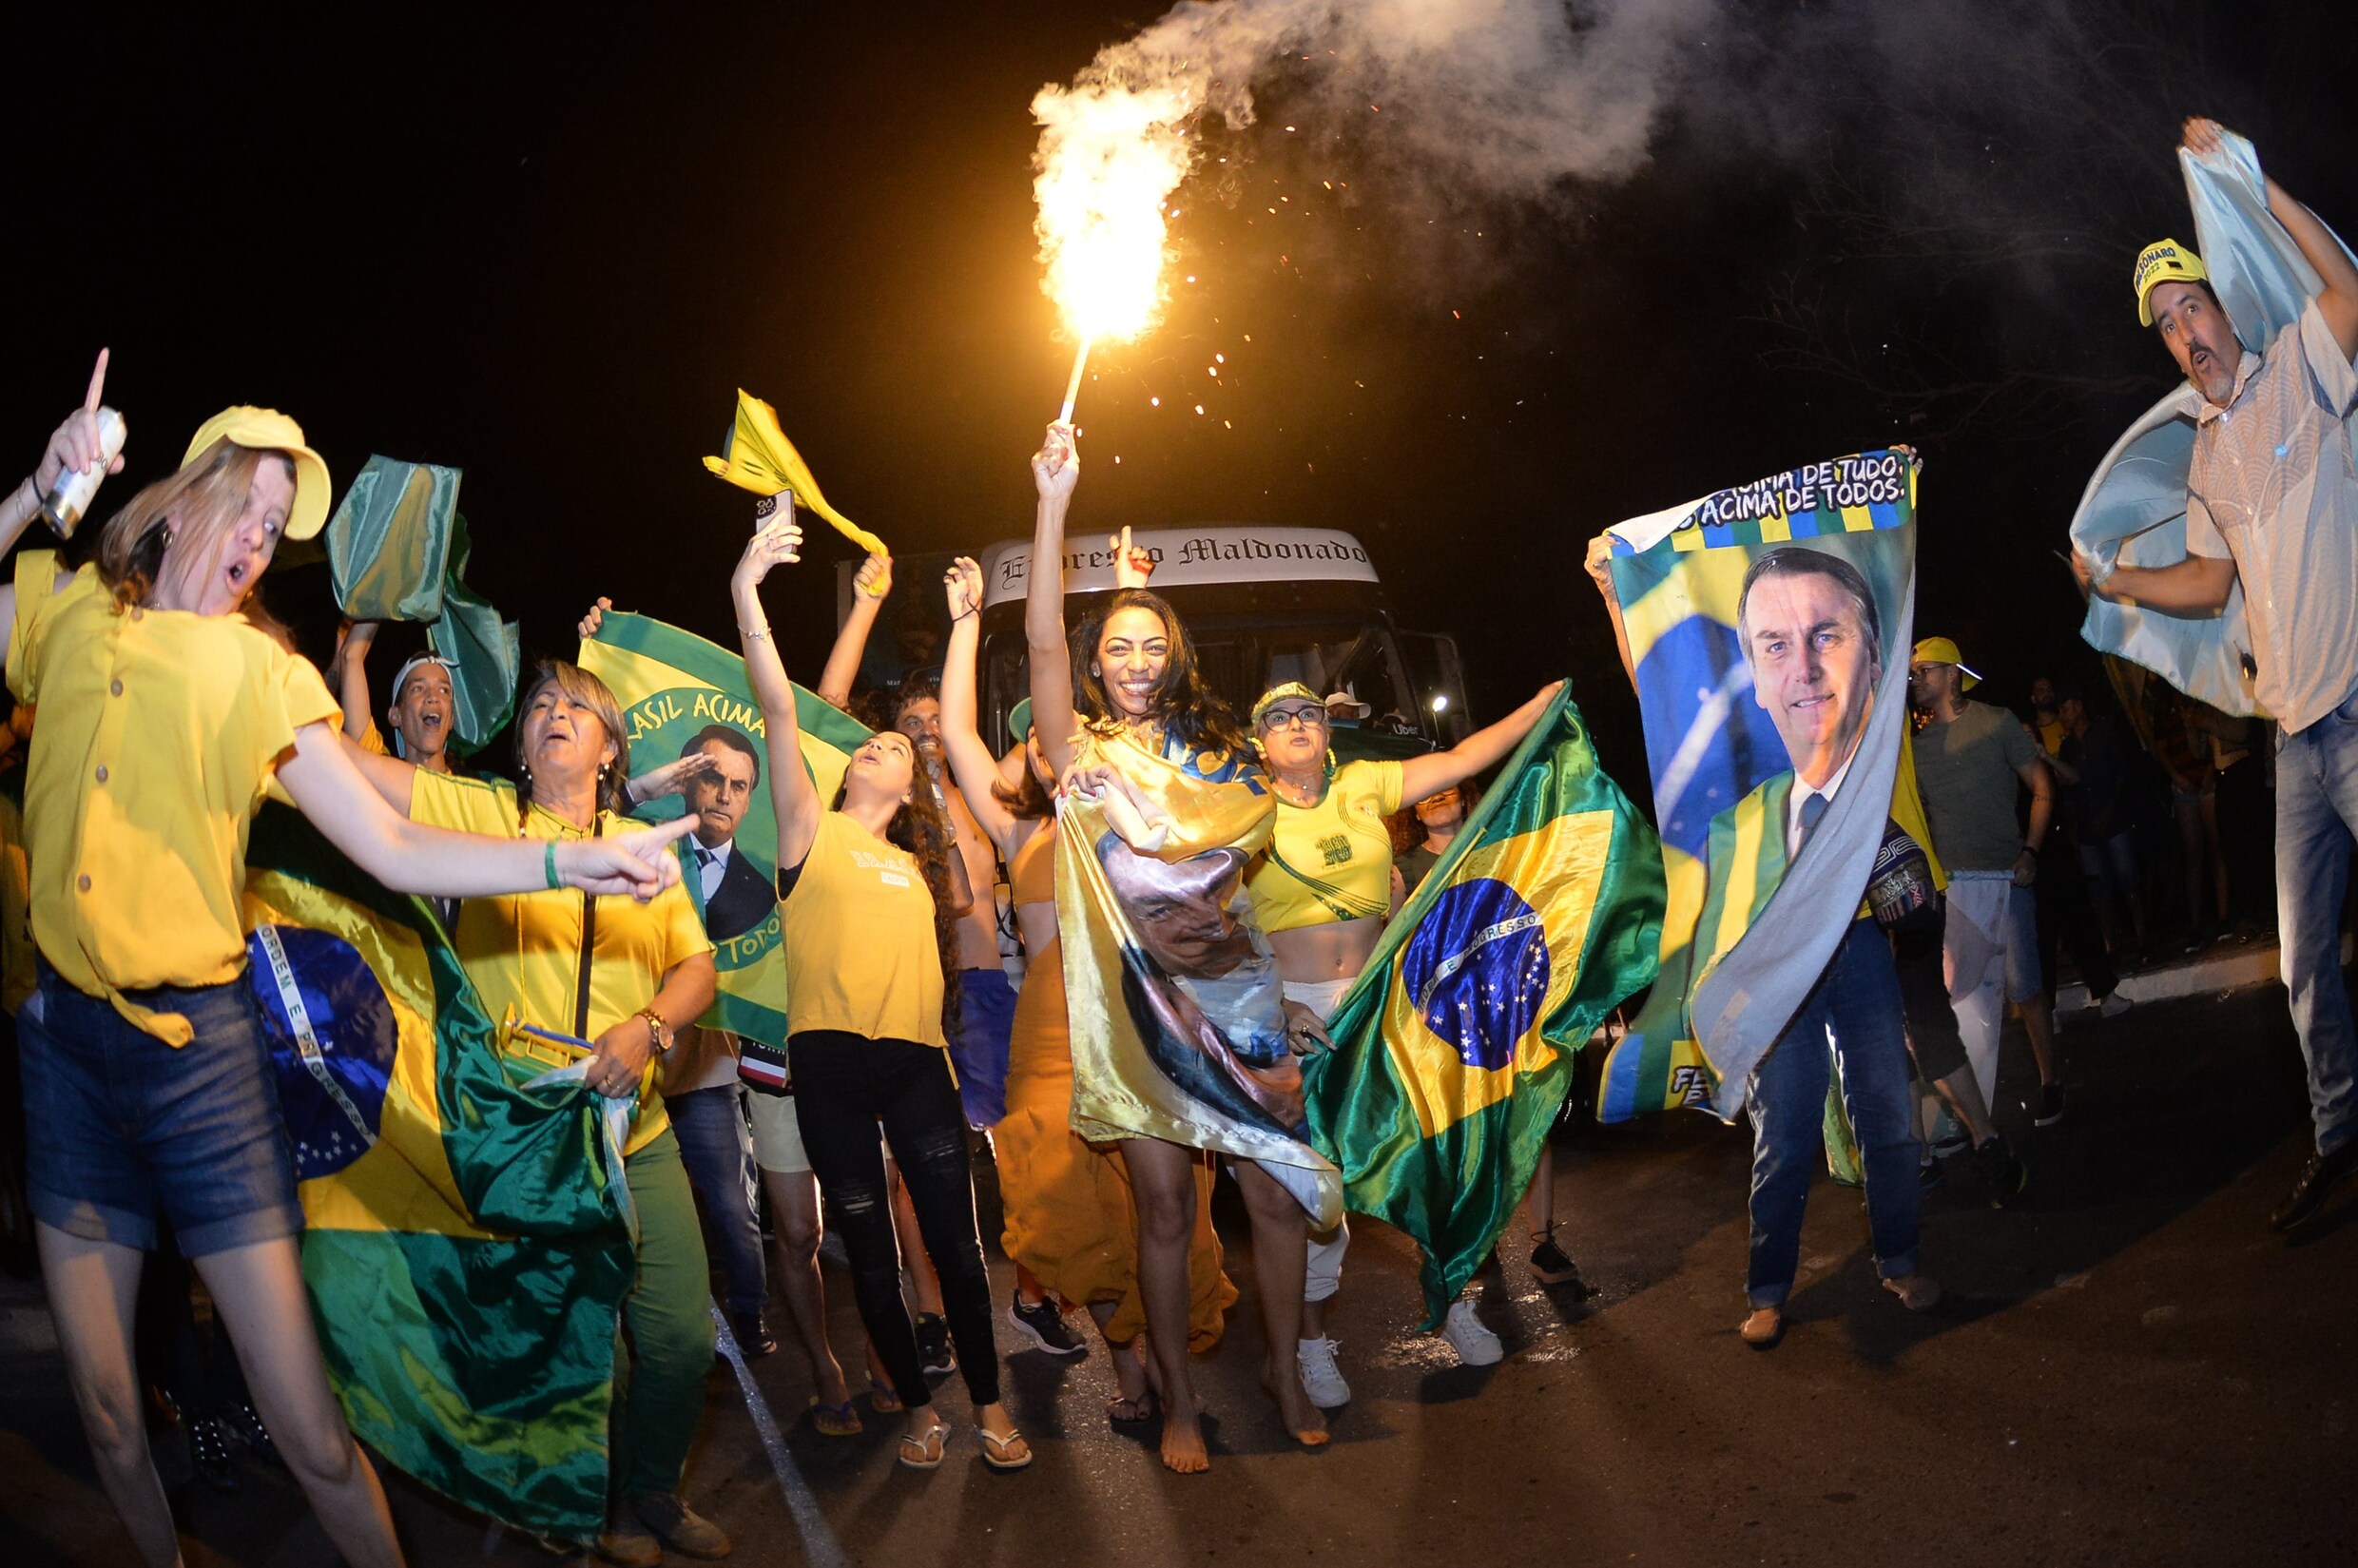 ‘Bolsonaro hoeft op dit moment geen ‘fraude’ te roepen, hij heeft veel om tevreden over te zijn’: onze journalist in Brazilië